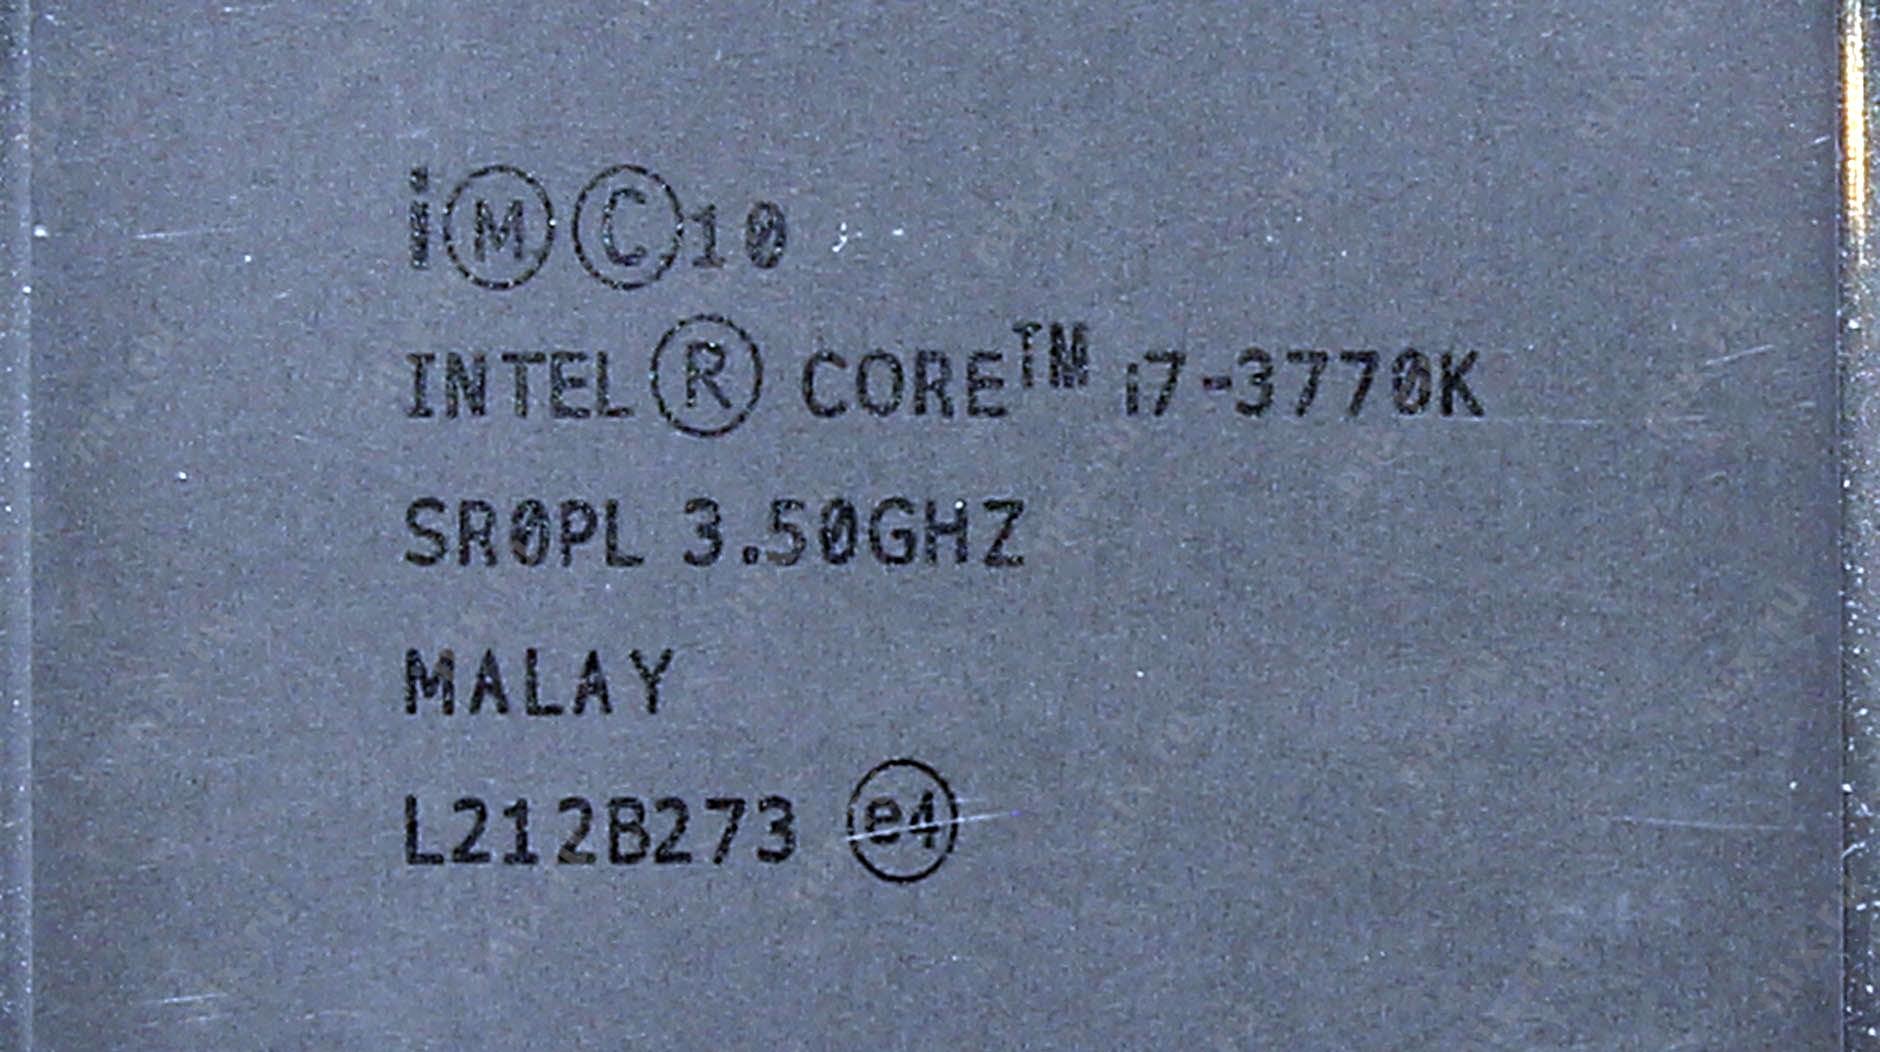 Процессор INTEL Core i7-3770K Processor - купить, сравнить тесты, цены